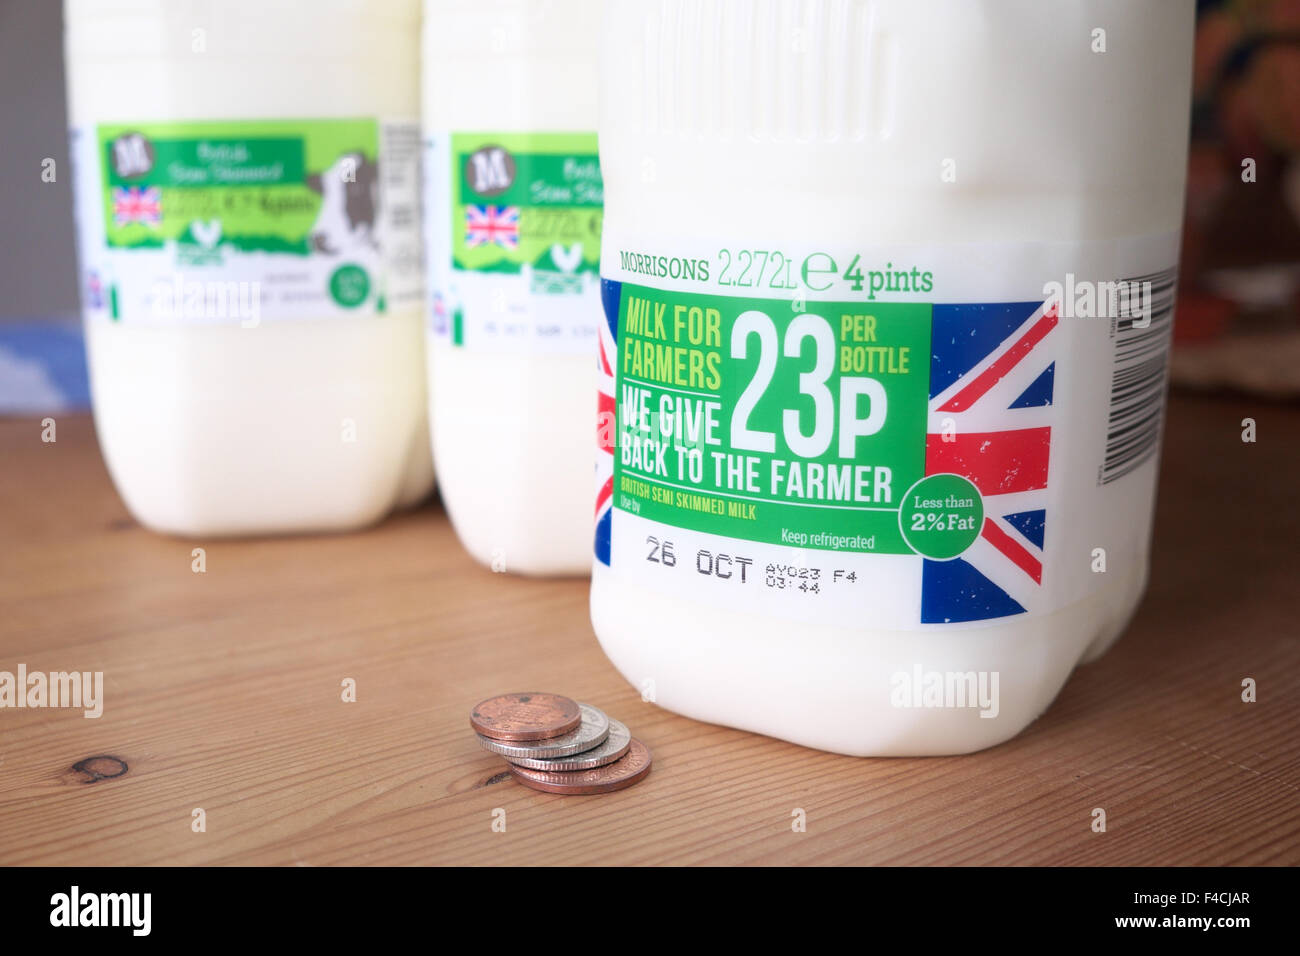 Regno Unito. 16 Ottobre 2015 - Morrisons supermercato ora hanno introdotto il proprio marchio "latte per gli agricoltori' prodotto. Il consumatore può scegliere di pagare un extra di 23 pence per una pinta di birra 4 bottiglia, pagando £1.12p in totale. L'extra 23p sarà restituito da Morrisons direttamente al settore lattiero-caseario. Gli acquirenti possono se vogliono comprare lo stesso prodotto a Morrisons per soli 89p con nessun denaro viene restituito al settore lattiero-caseario. Foto Stock